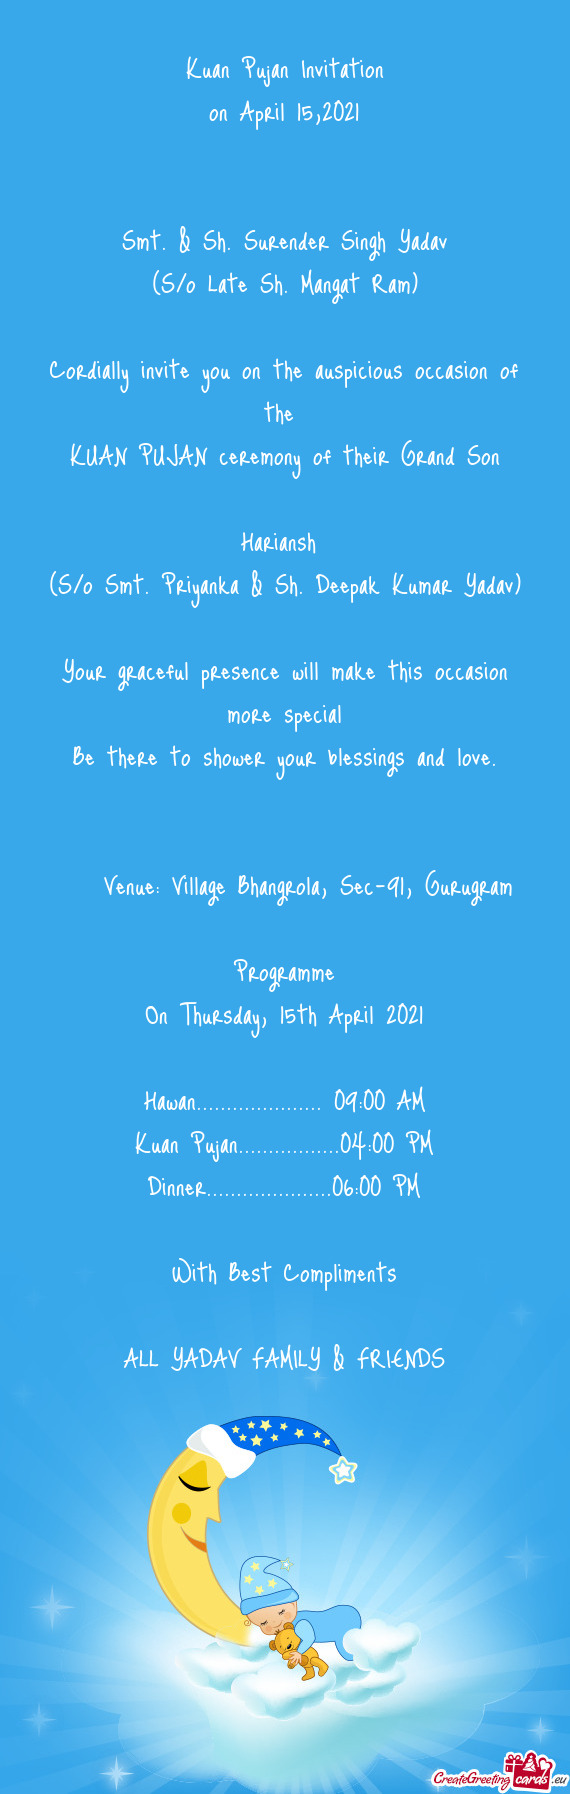 Gurugram
 
 Programme
 On Thursday